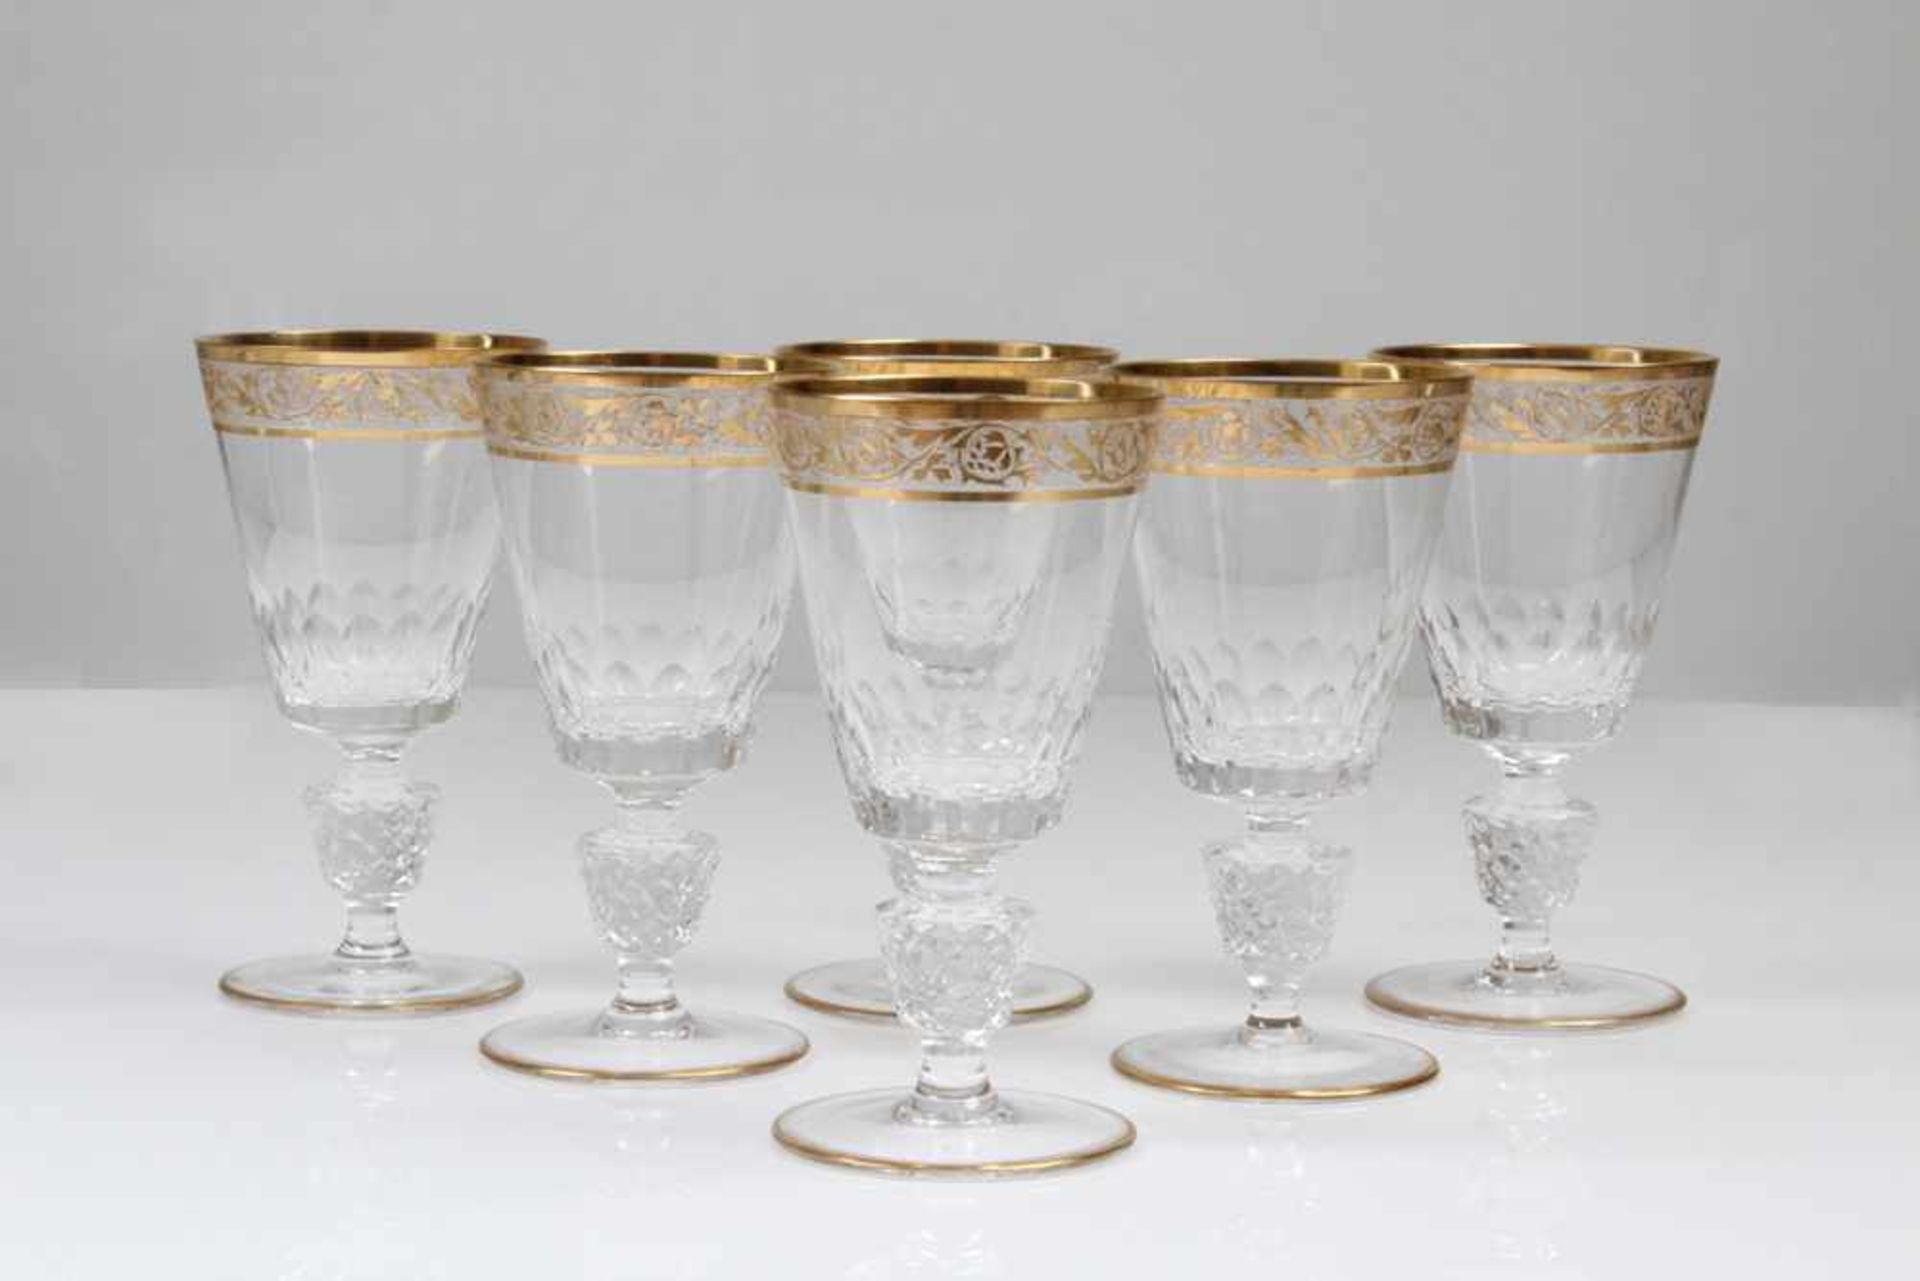 Sechs Südweingläser.Farbloses, mundgeblasenes Glas mit Goldbordüre. H: 13 cm. Zwei Gläser min.